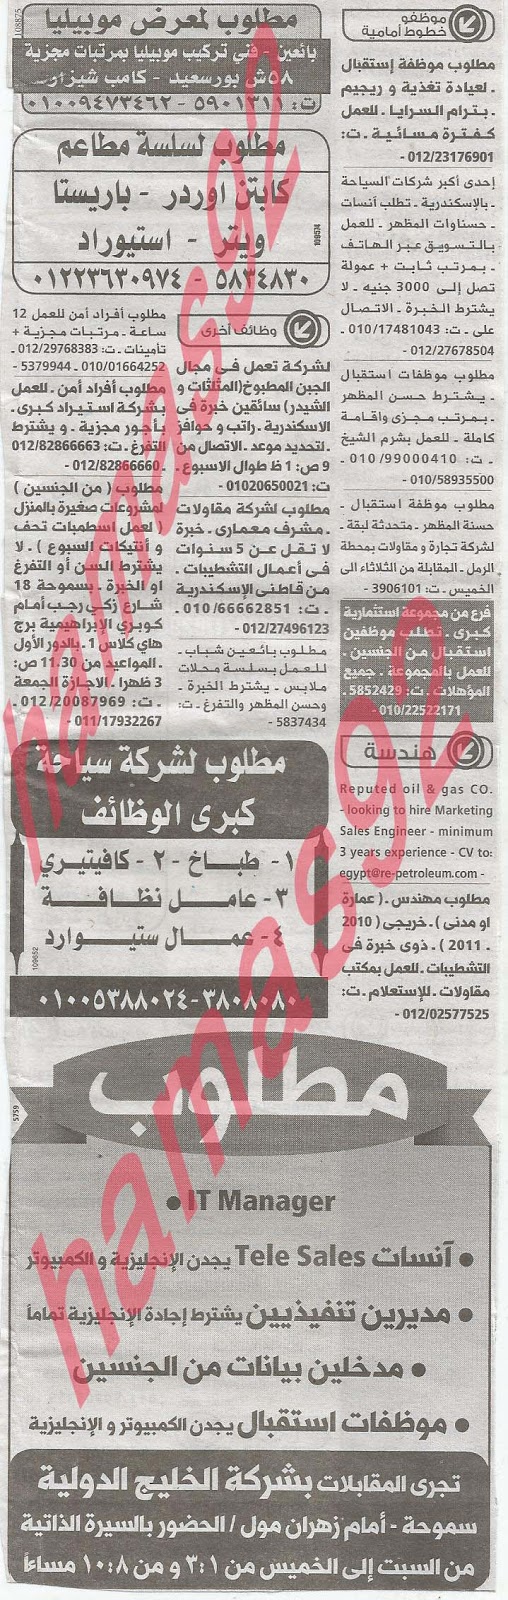 وظائف خالية فى جريدة الوسيط الاسكندرية الثلاثاء 14-05-2013 %D9%88+%D8%B3+%D8%B3+6